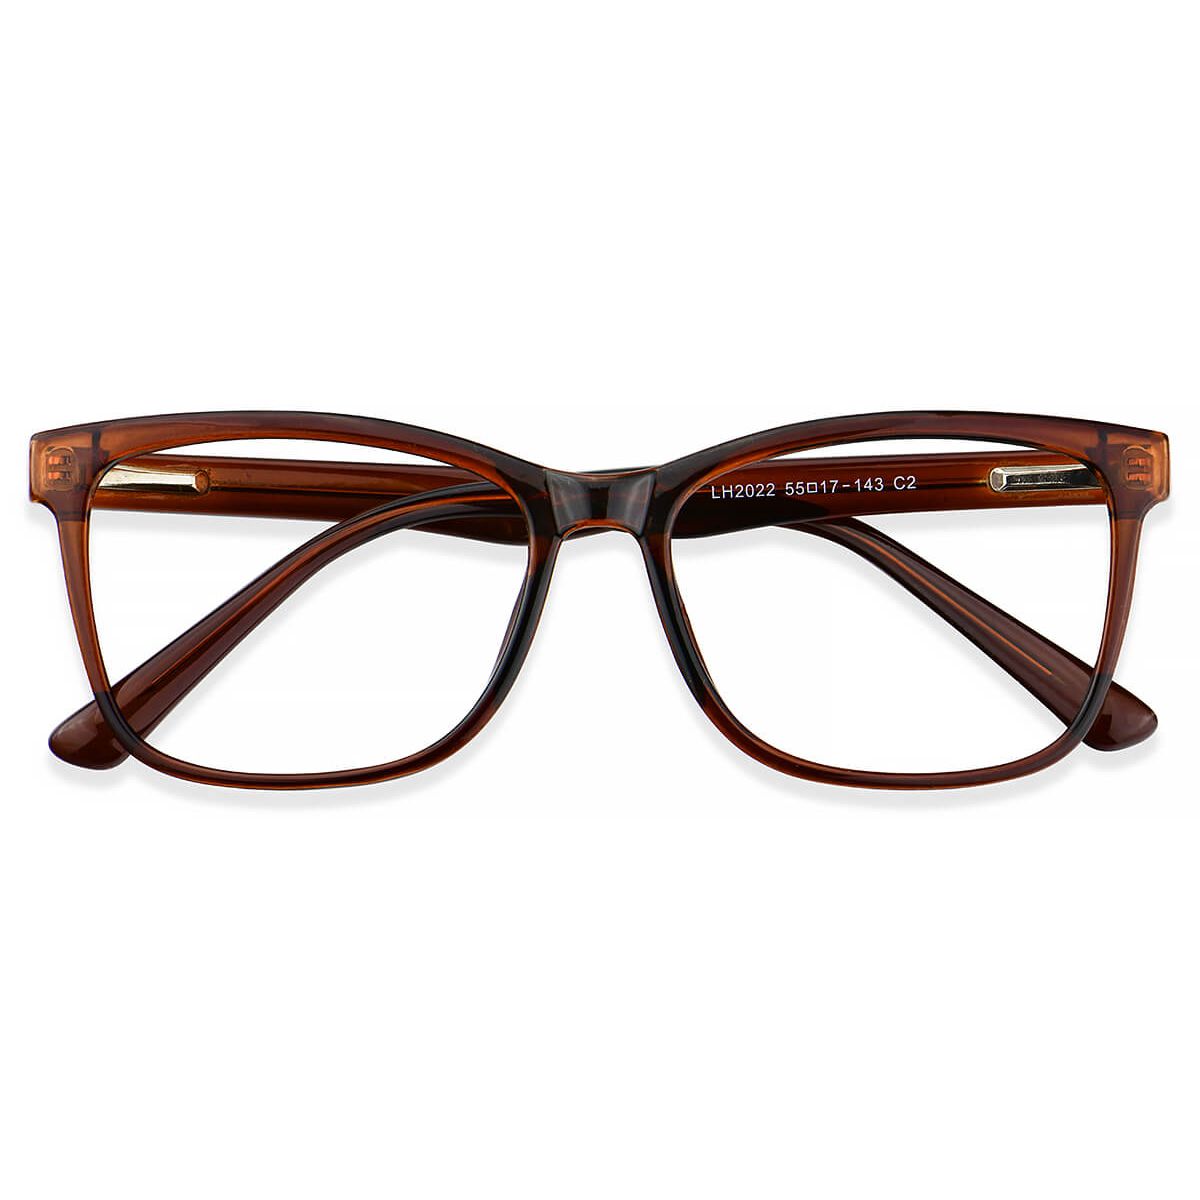 Lh2022 Rectangle Brown Eyeglasses Frames Leoptique